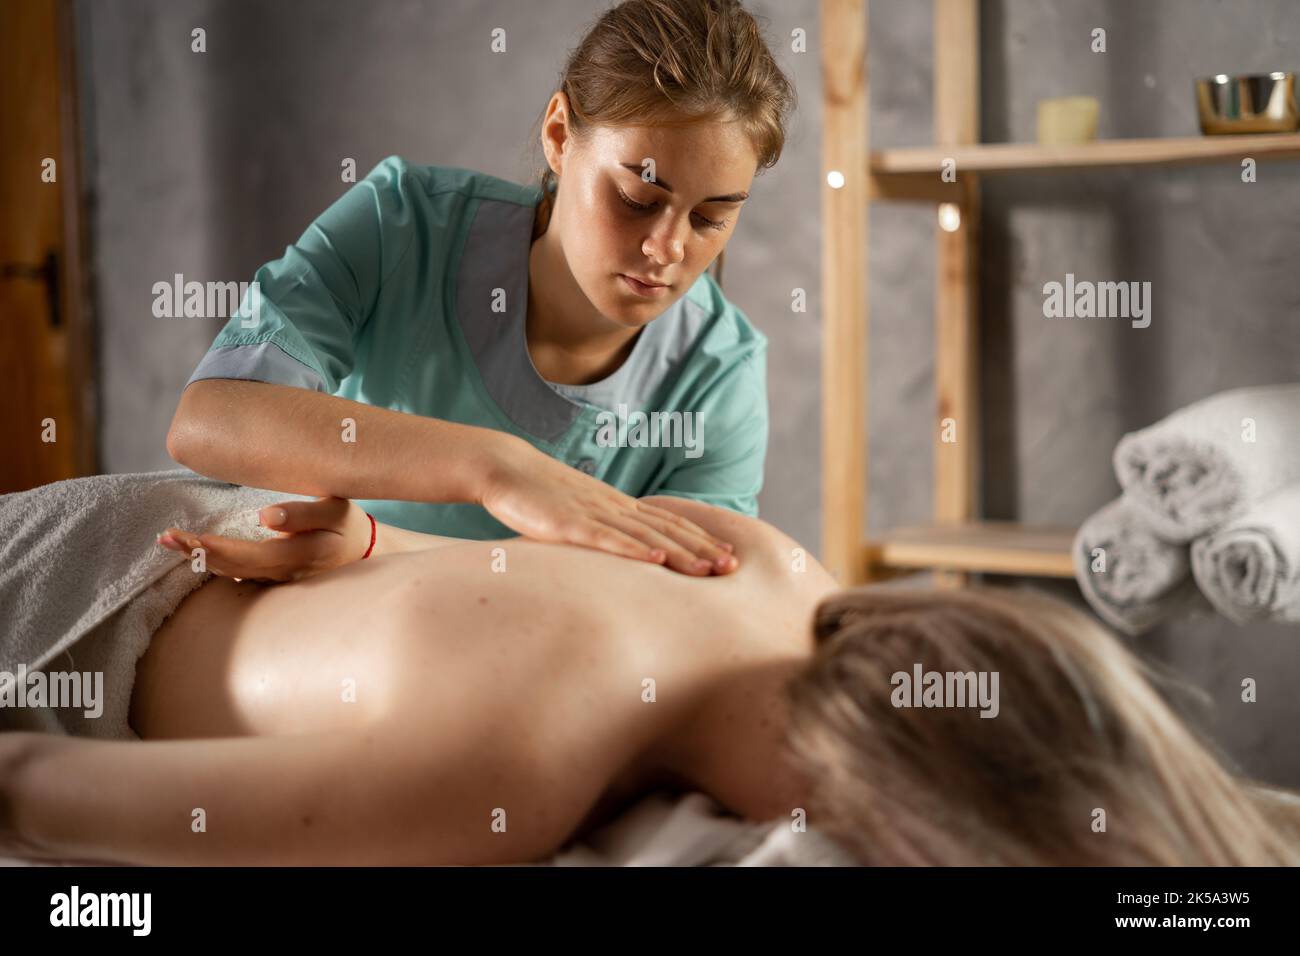 Masseur massiert Schulter der jungen Frau. Weibliche Patientin erhält heilende Körper- und Schulterblatt-Massage, die Schmerzen lindert und die Muskeln entspannt. Stockfoto